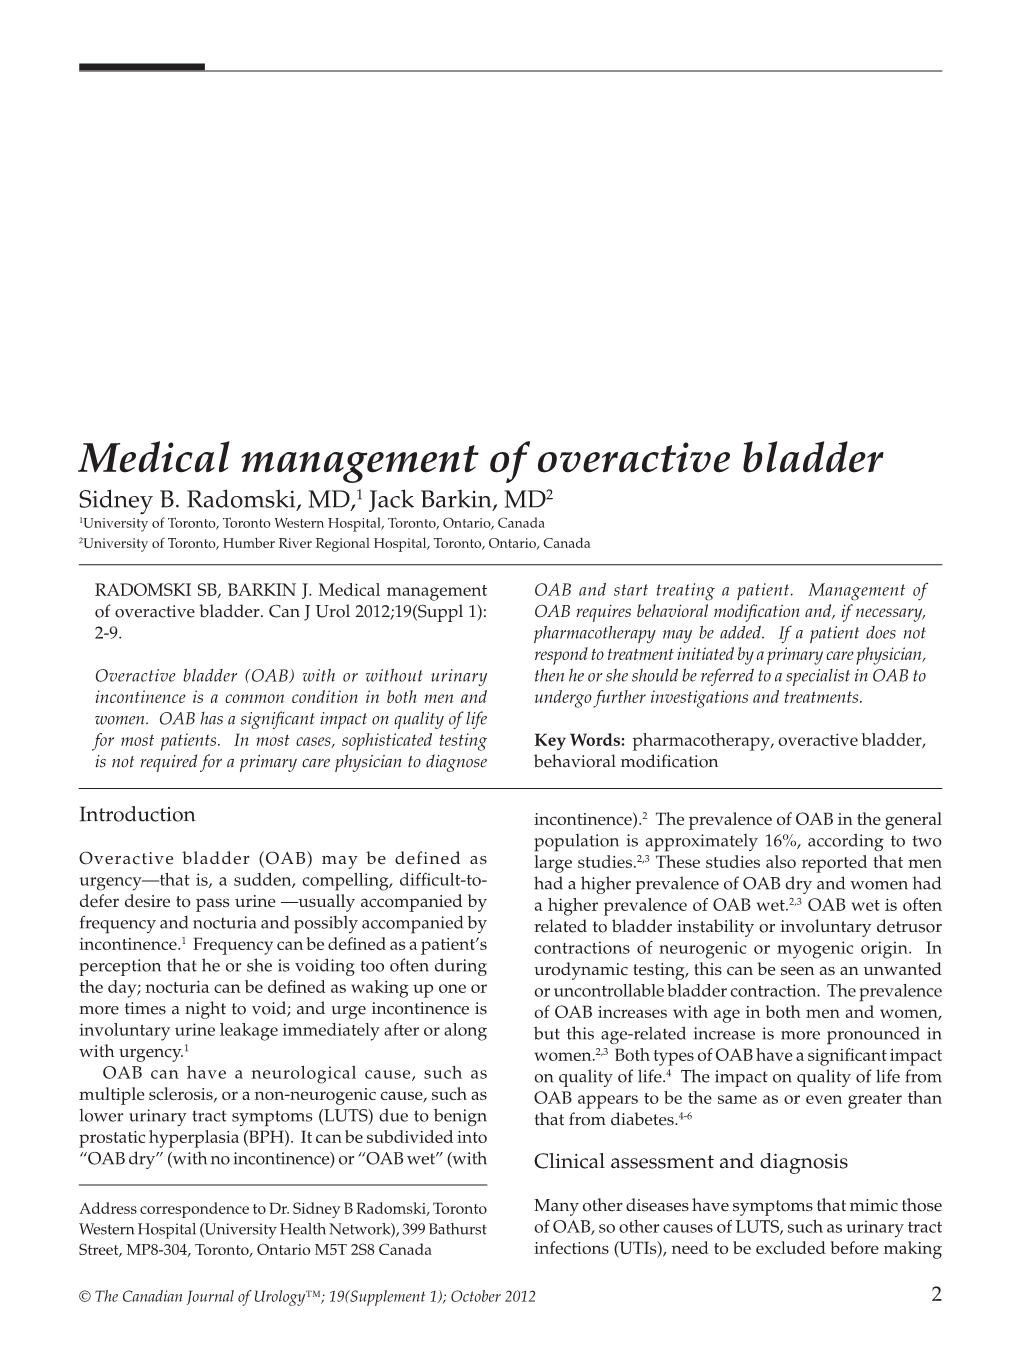 Medical Management of Overactive Bladder Sidney B